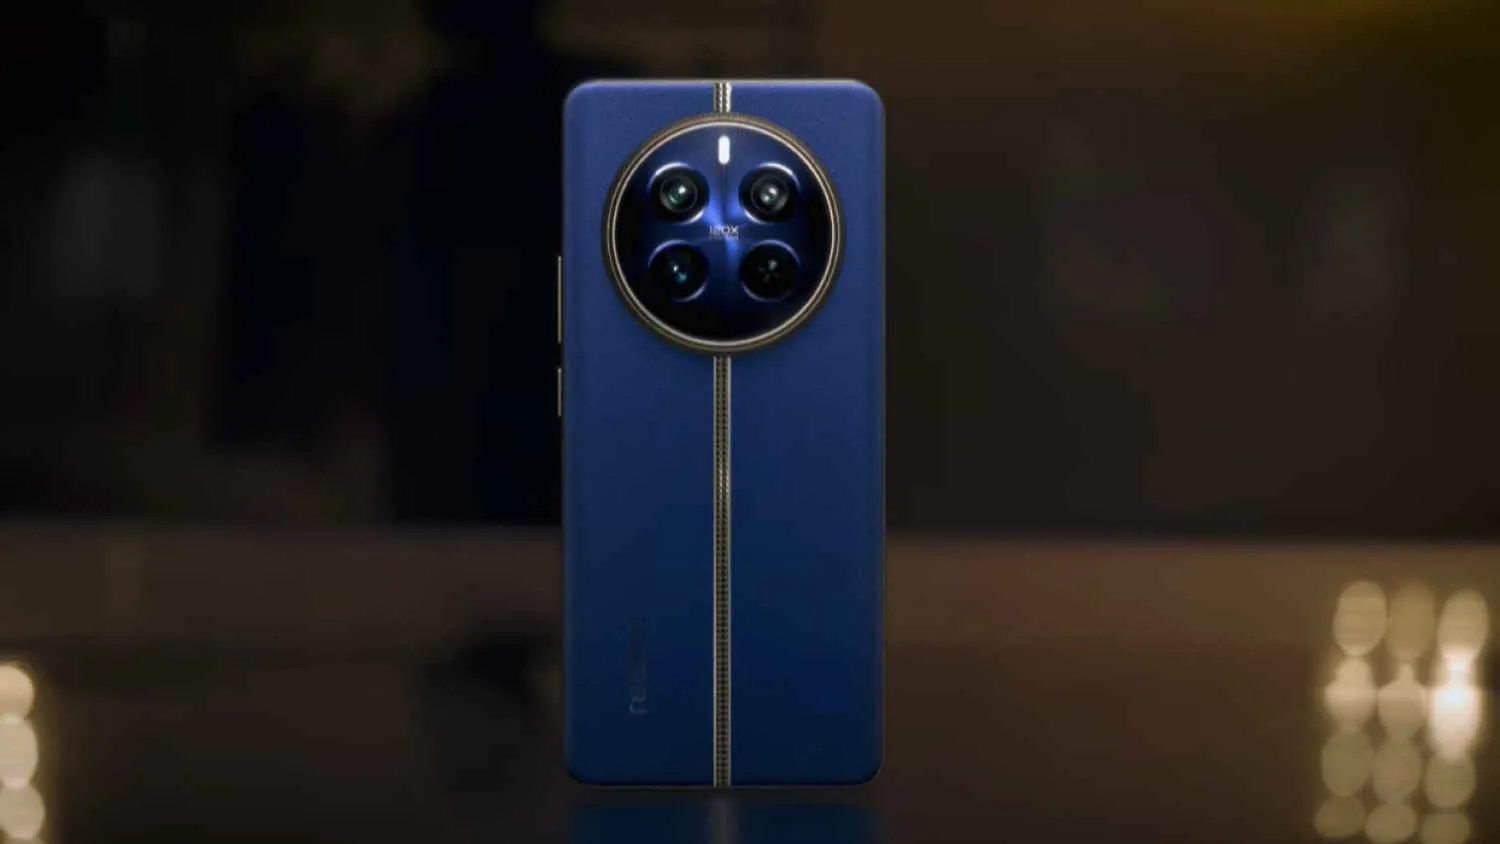 realme 12 Pro ra mắt trang bị camera tele, phiên bản Pro+ vượt trội hơn với ống kính tiềm vọng